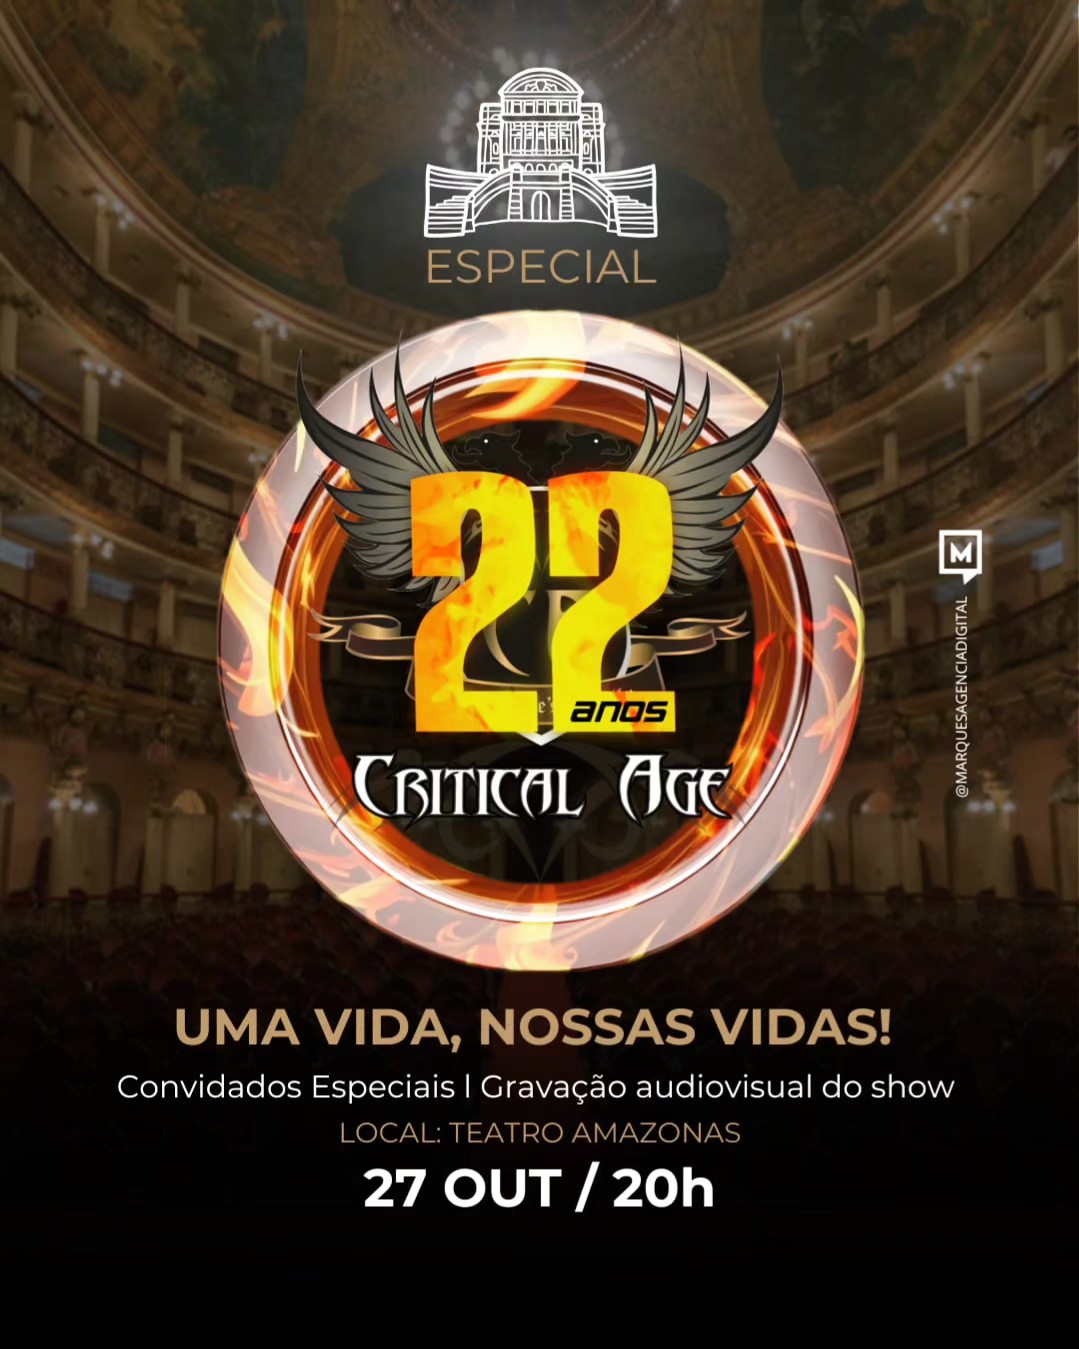 Critical Age orá comemorar 22 anos com show épico no Teatro Amazonas! Confira tudo!